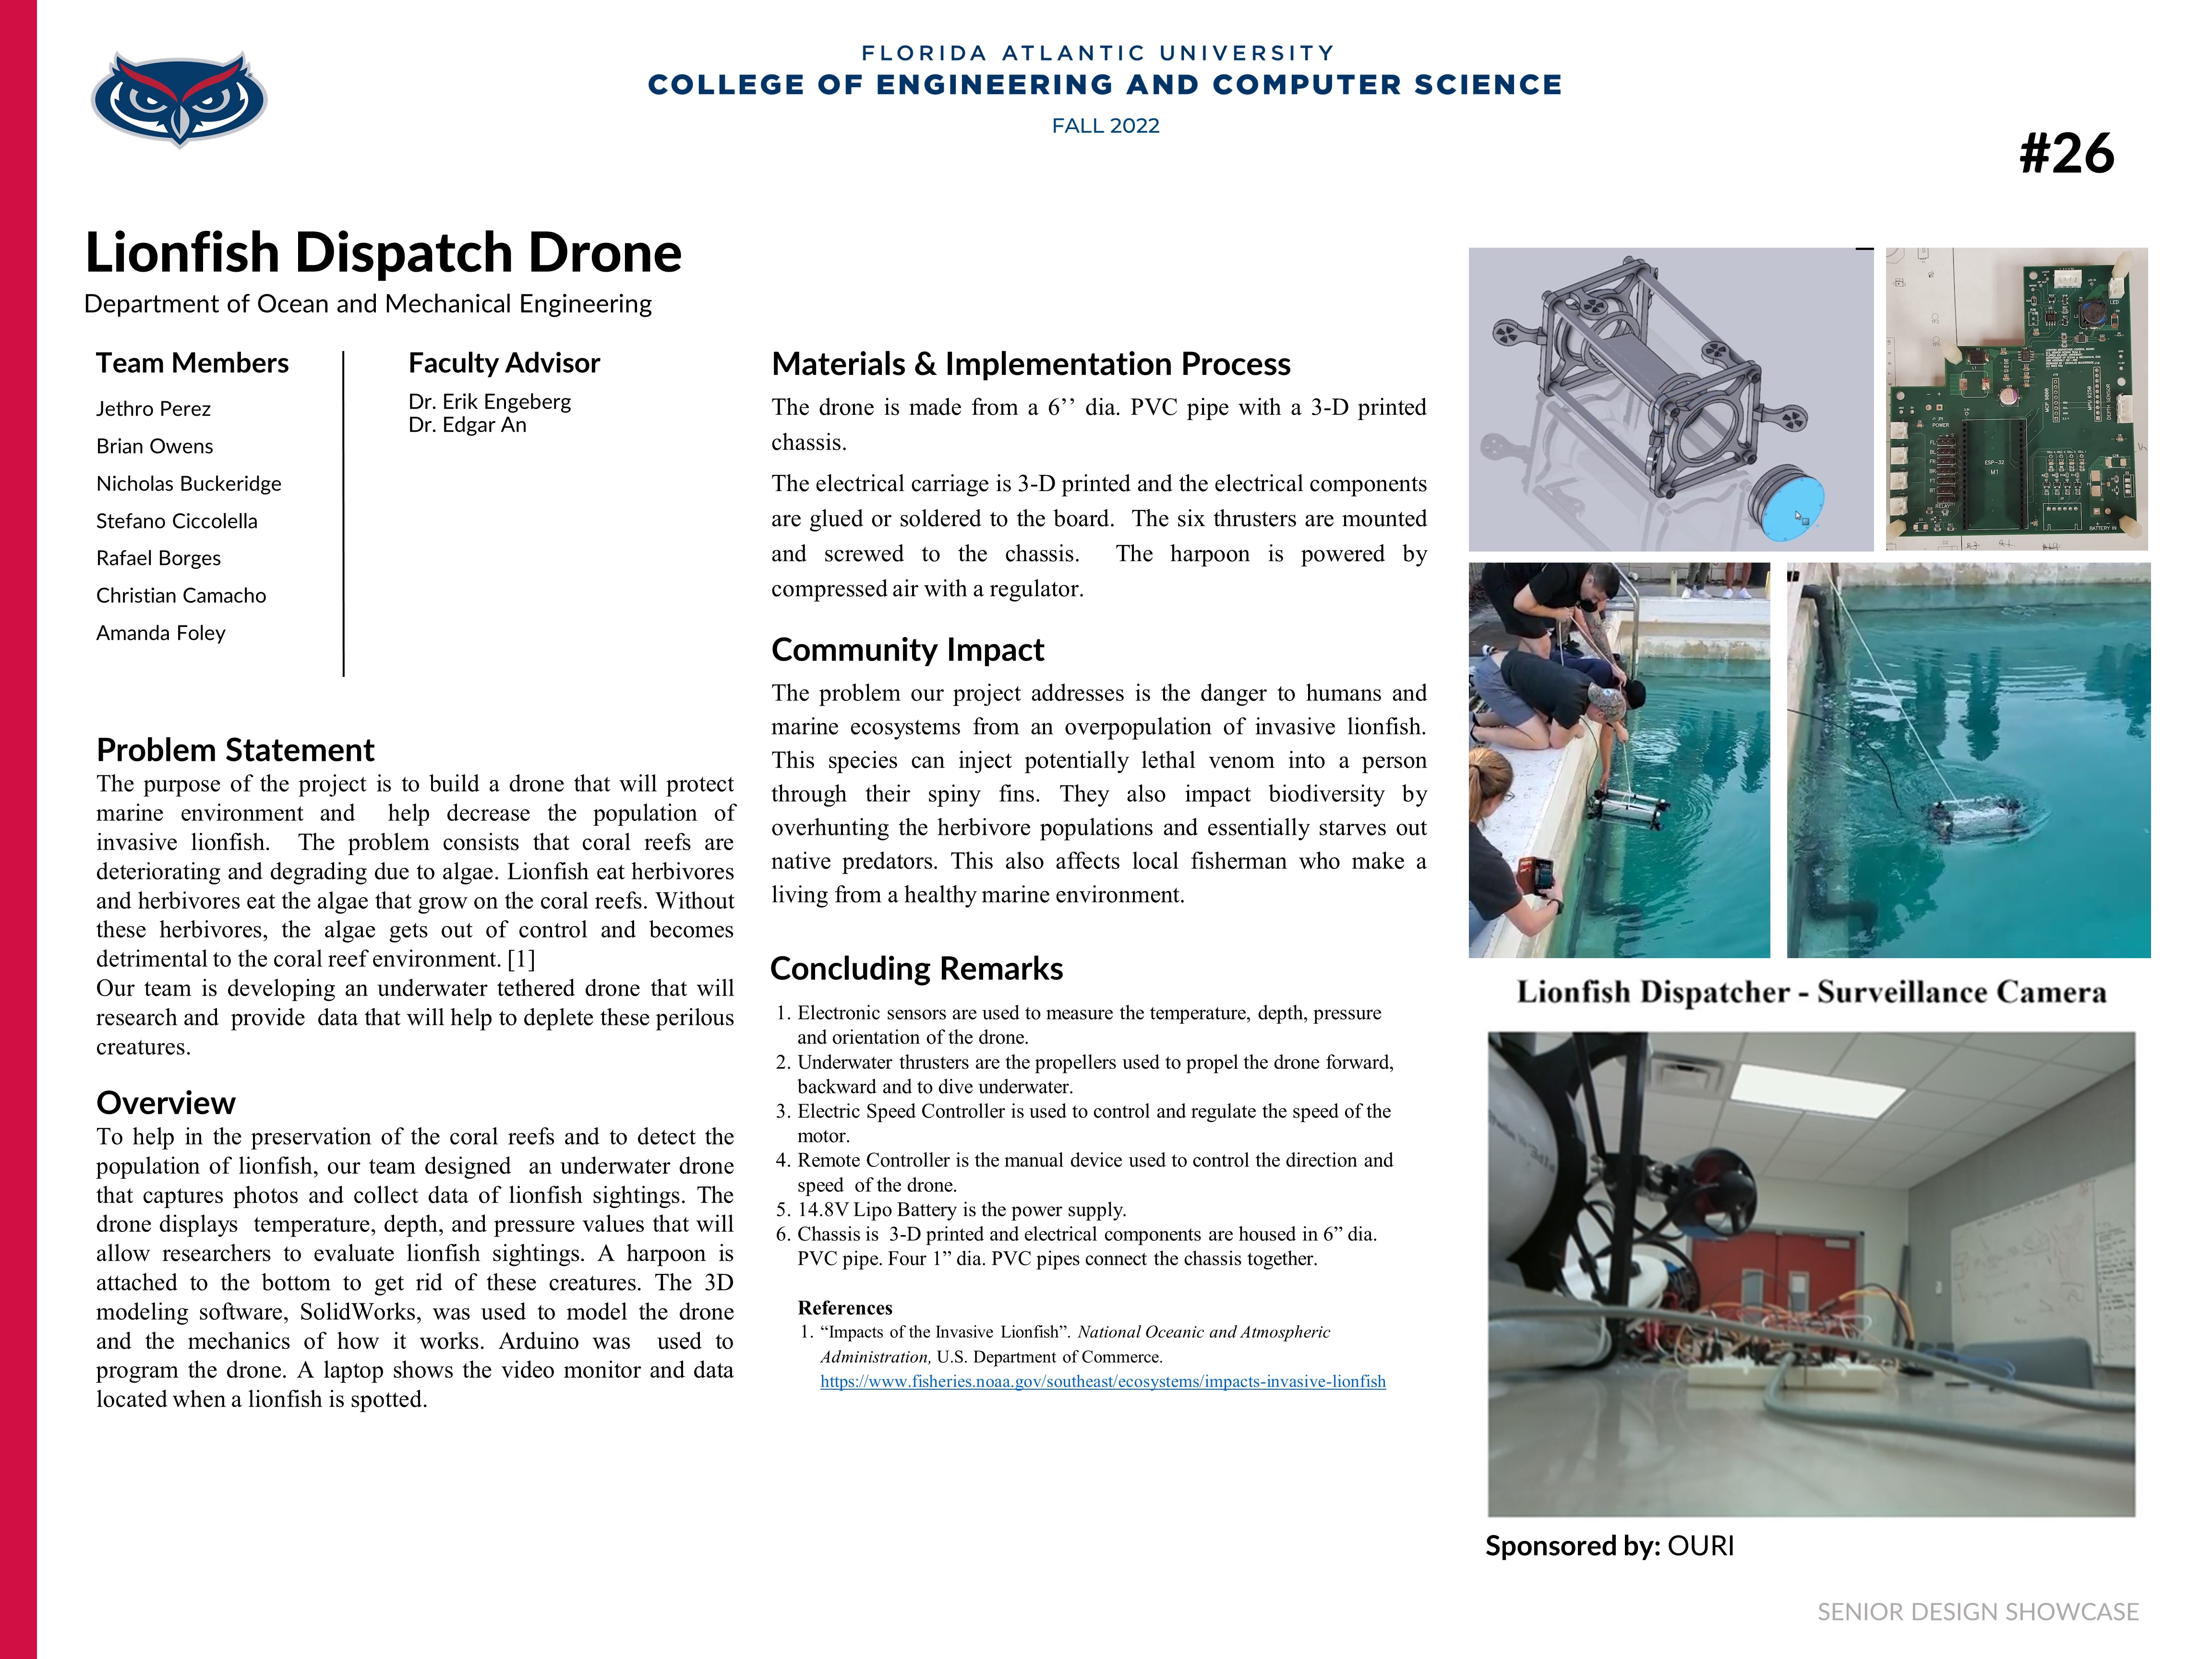 Lionfish Dispatch Drone